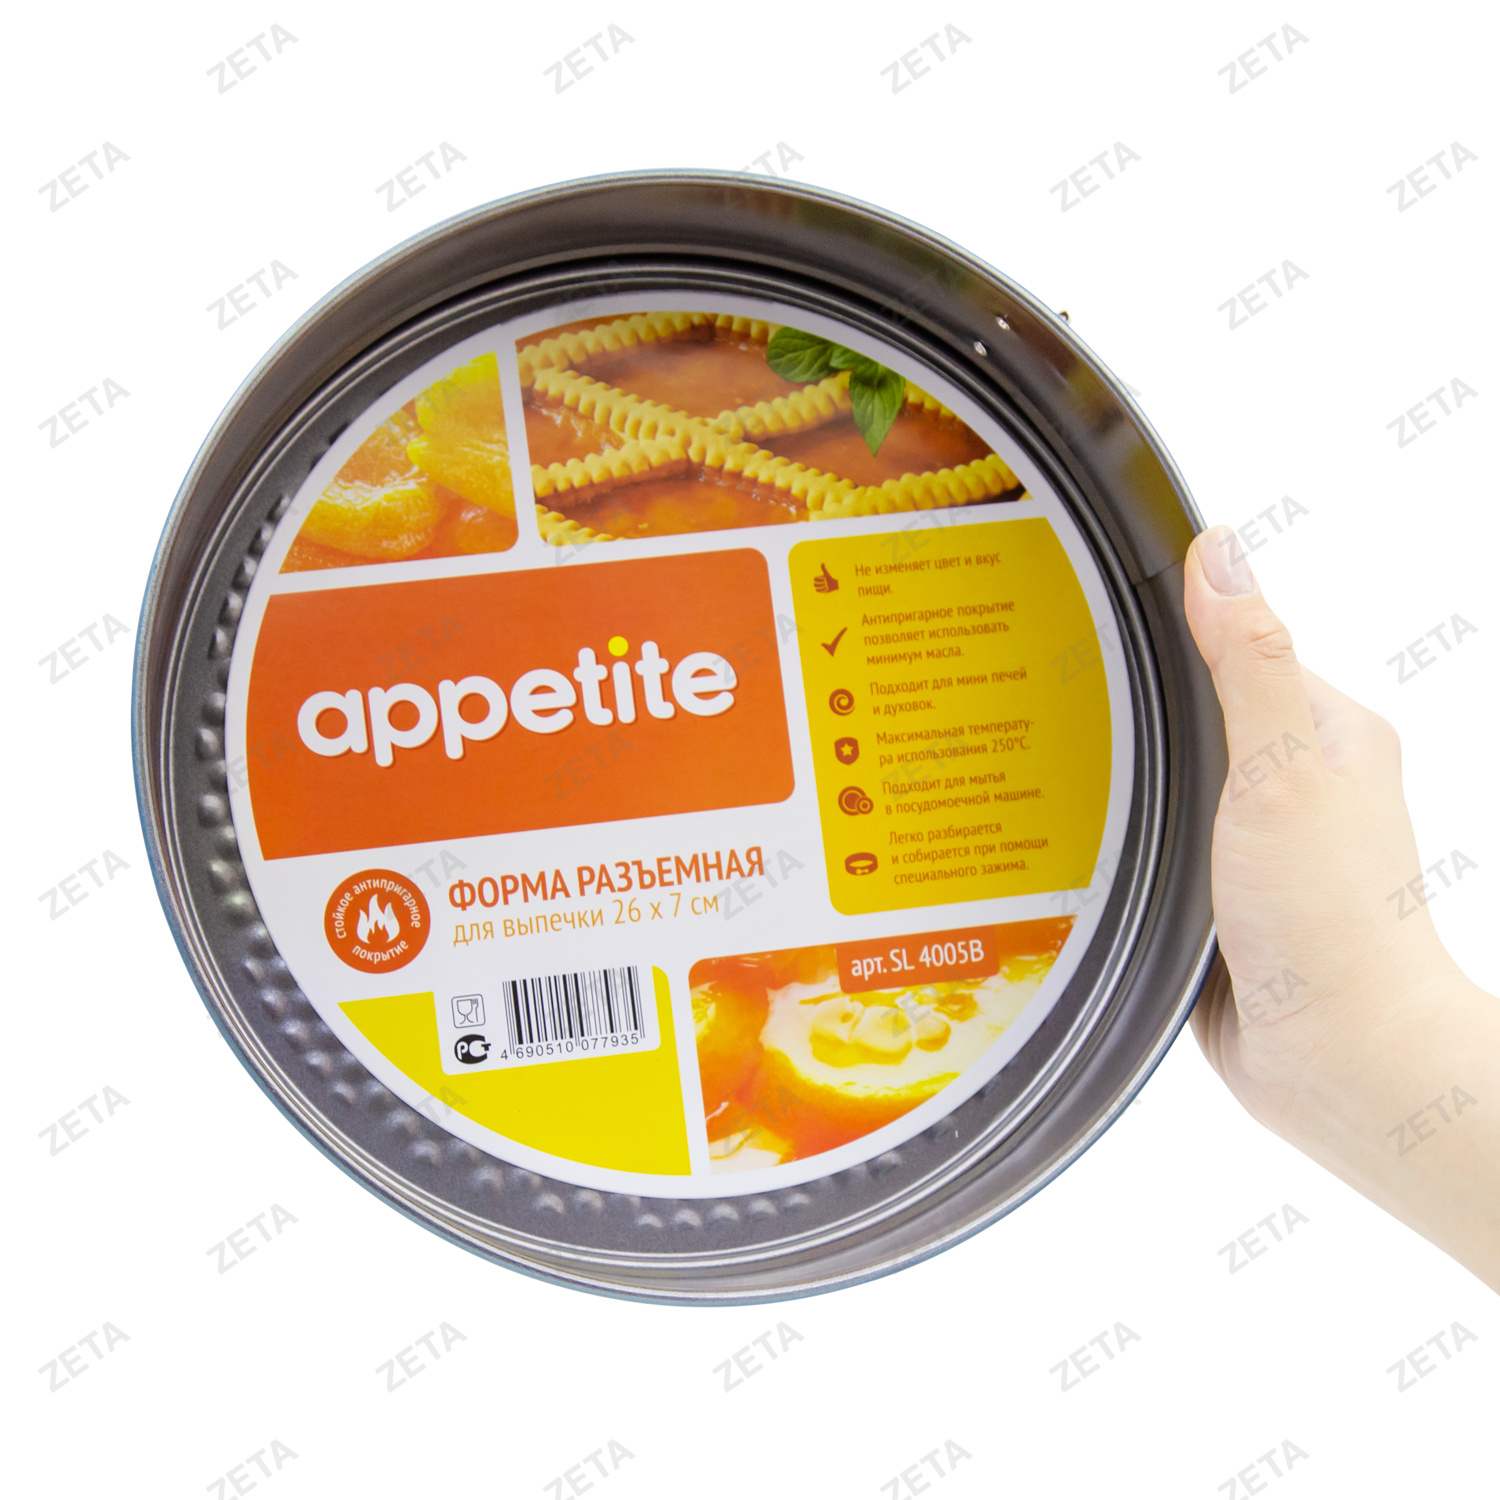 Форма для выпечки "Appetite" №SL4005B ТМ - изображение 2